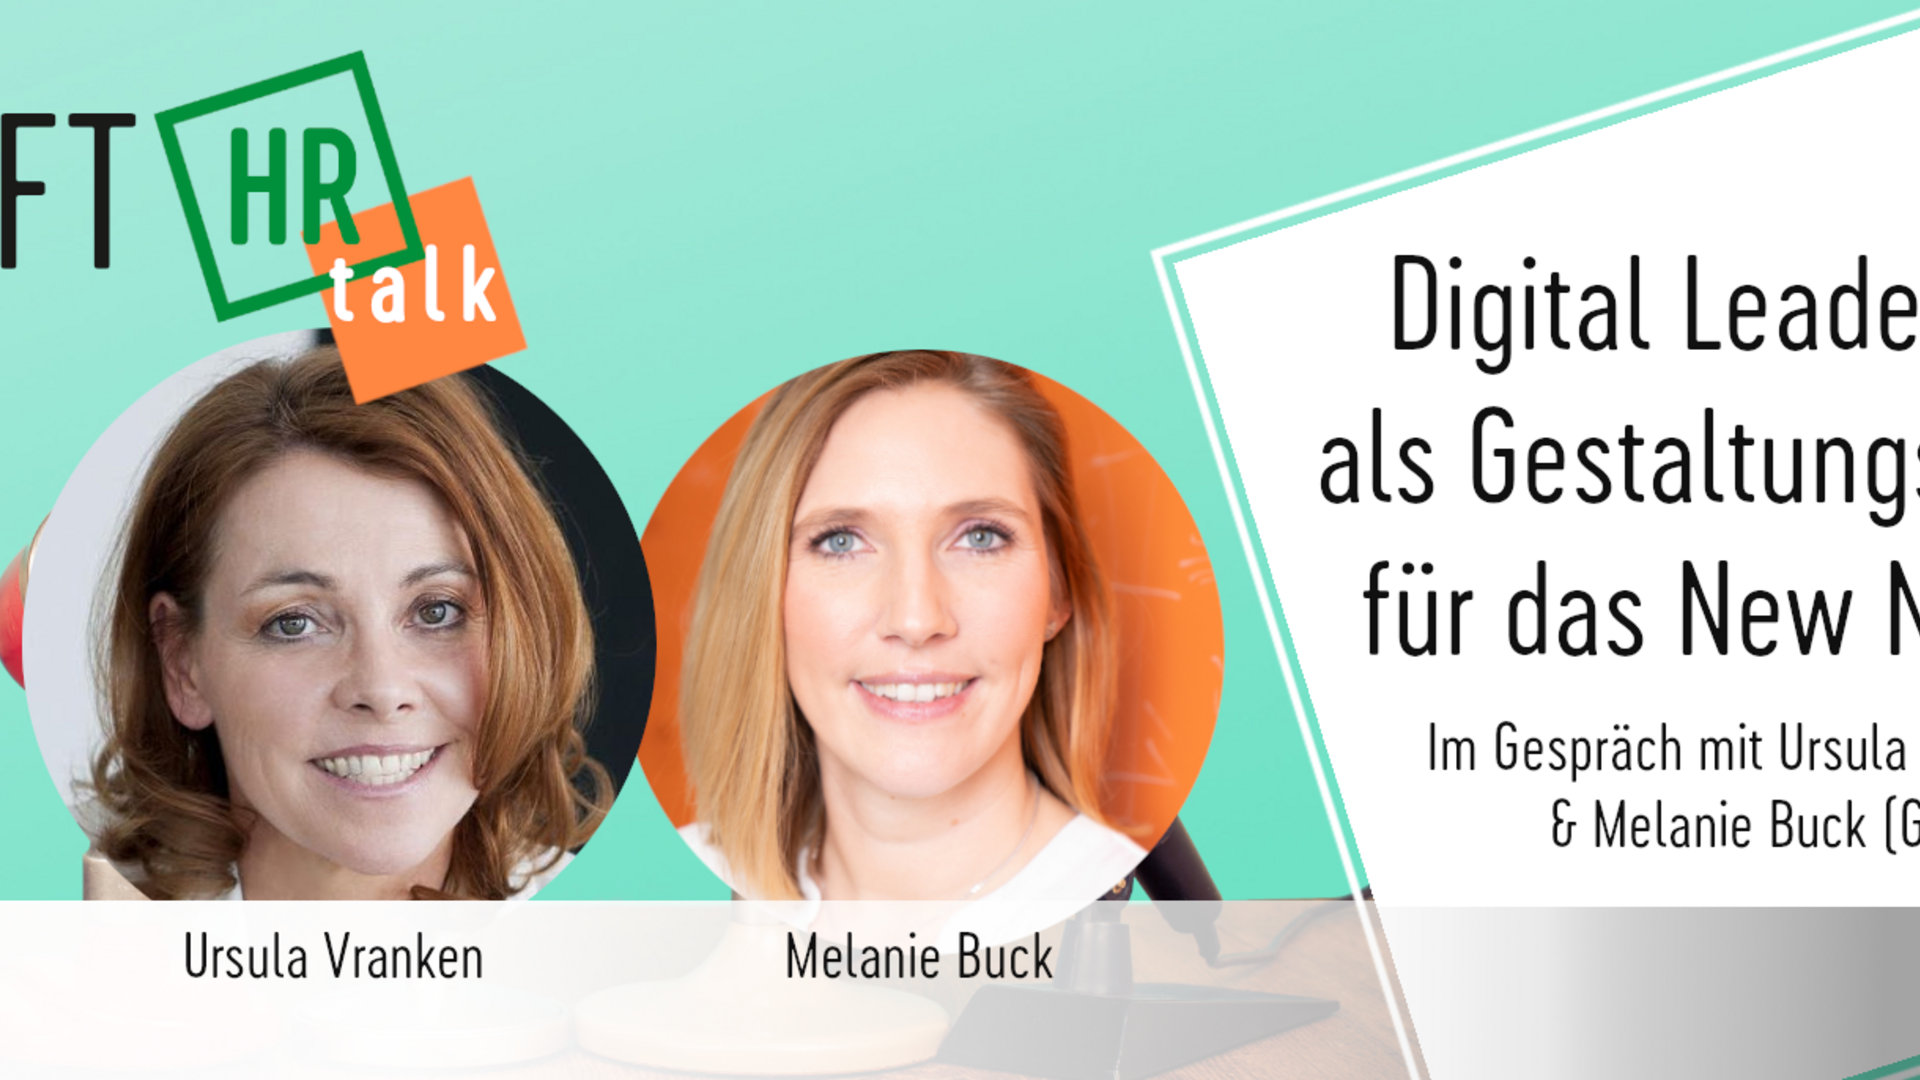 Im Gespräch mit Ursula Vranken & Melanie Buck zu Digital Leadership als HR Gestaltungsansatz für das New Normal